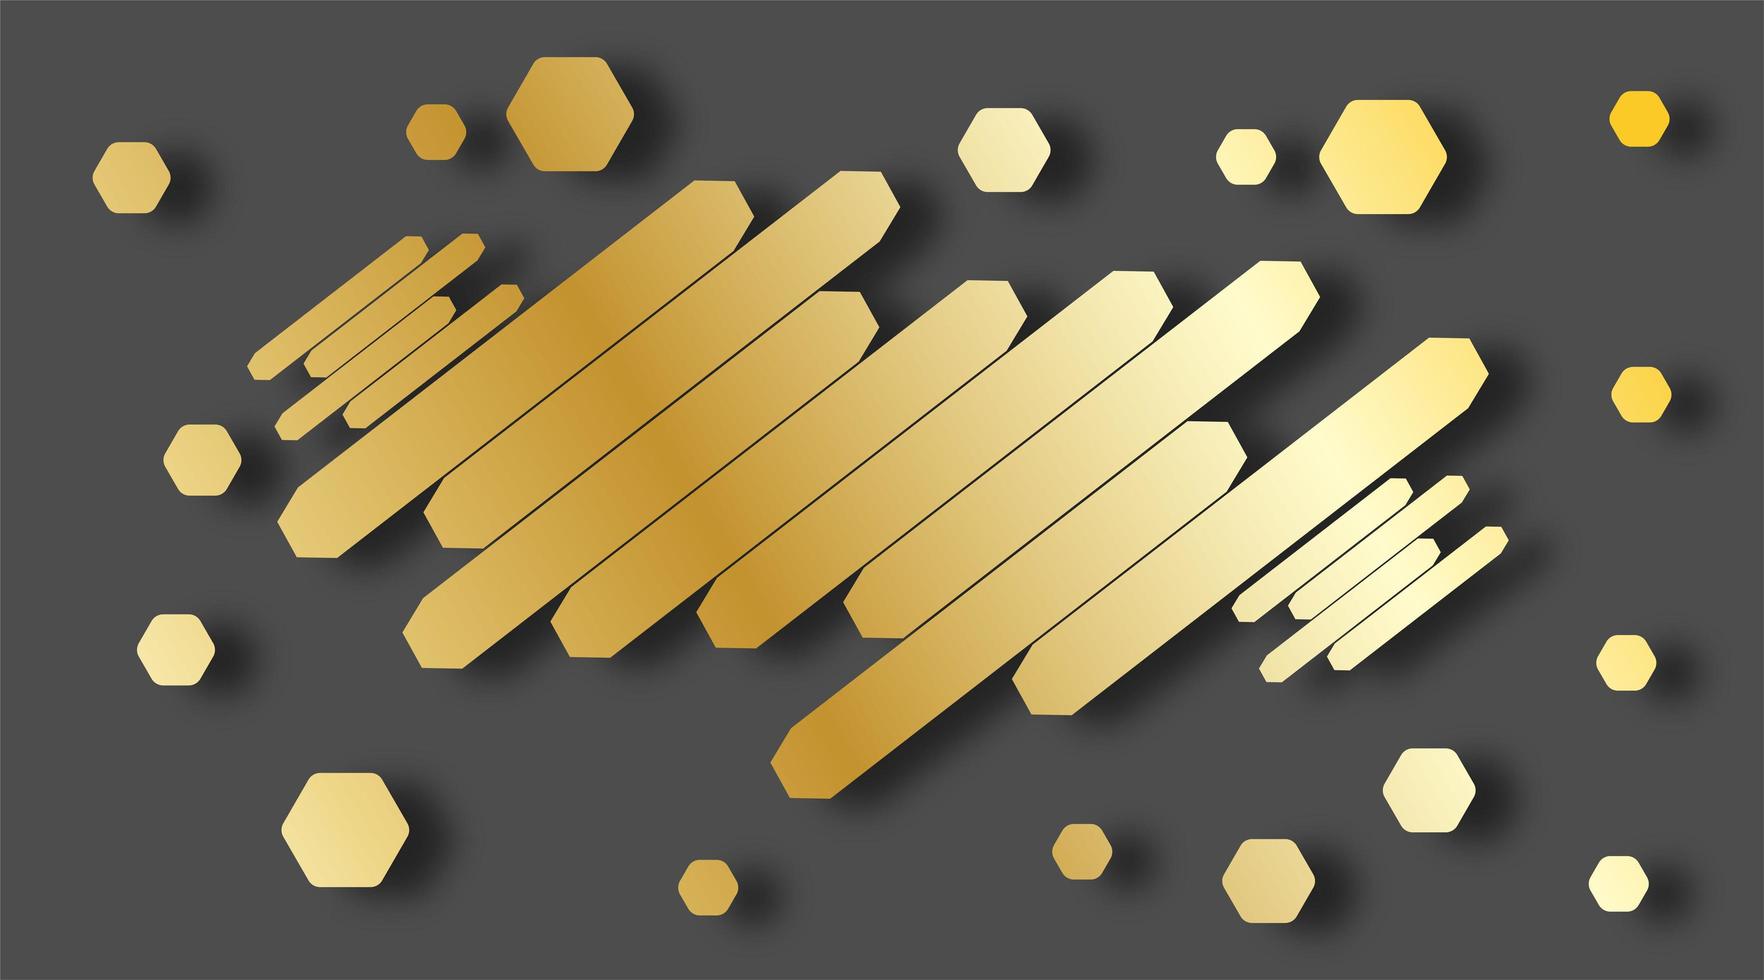 estilo abstrato moderno com composição feita de vários hexágonos dourados paralelos. ilustração vetorial. vetor